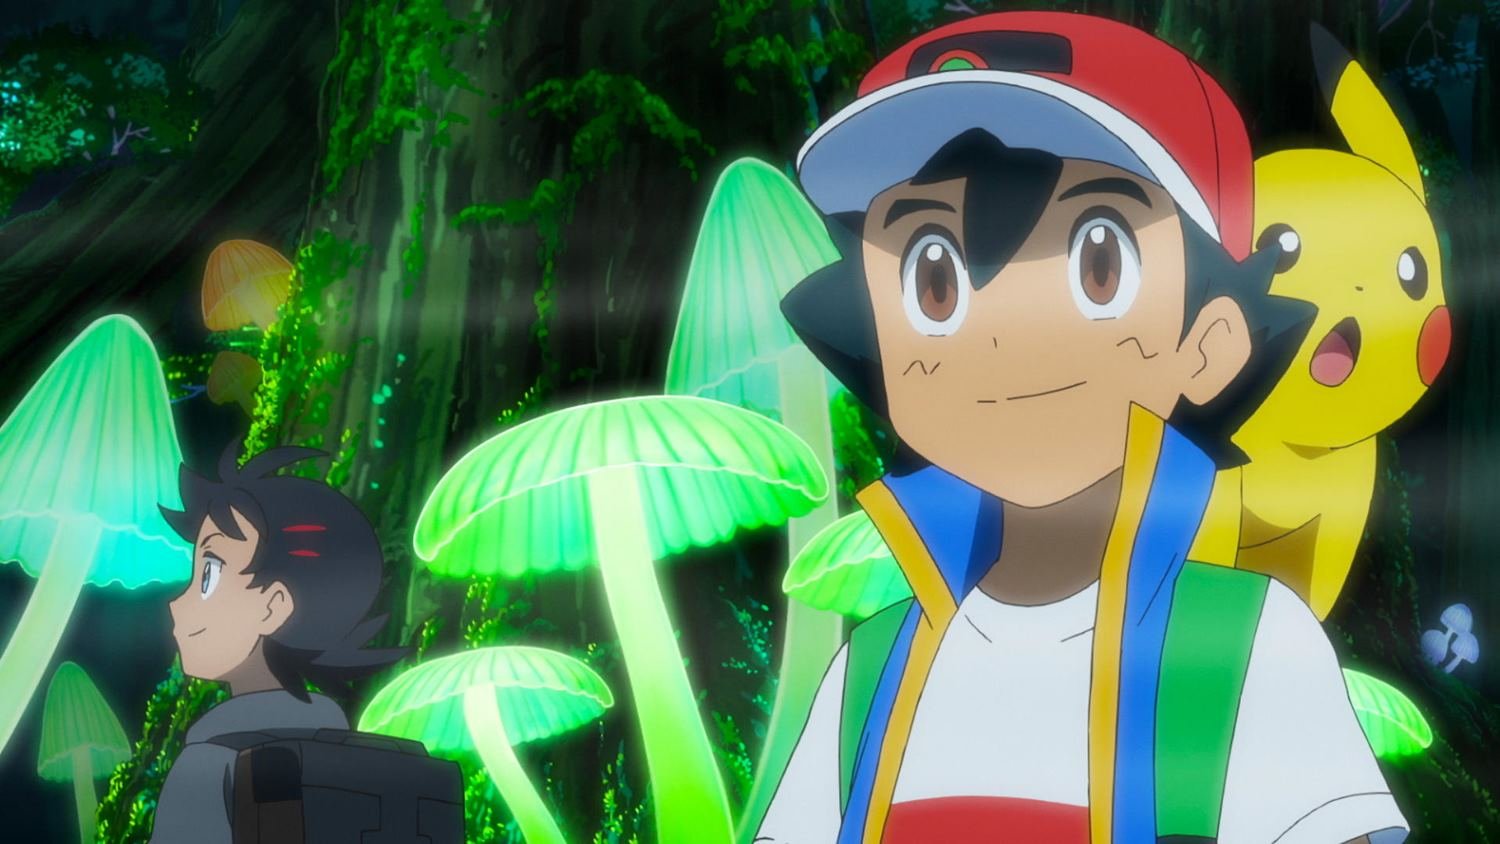 Pokémon: 25 anos depois, Ash é campeão mundial e finalmente se torna melhor  treinador do mundo